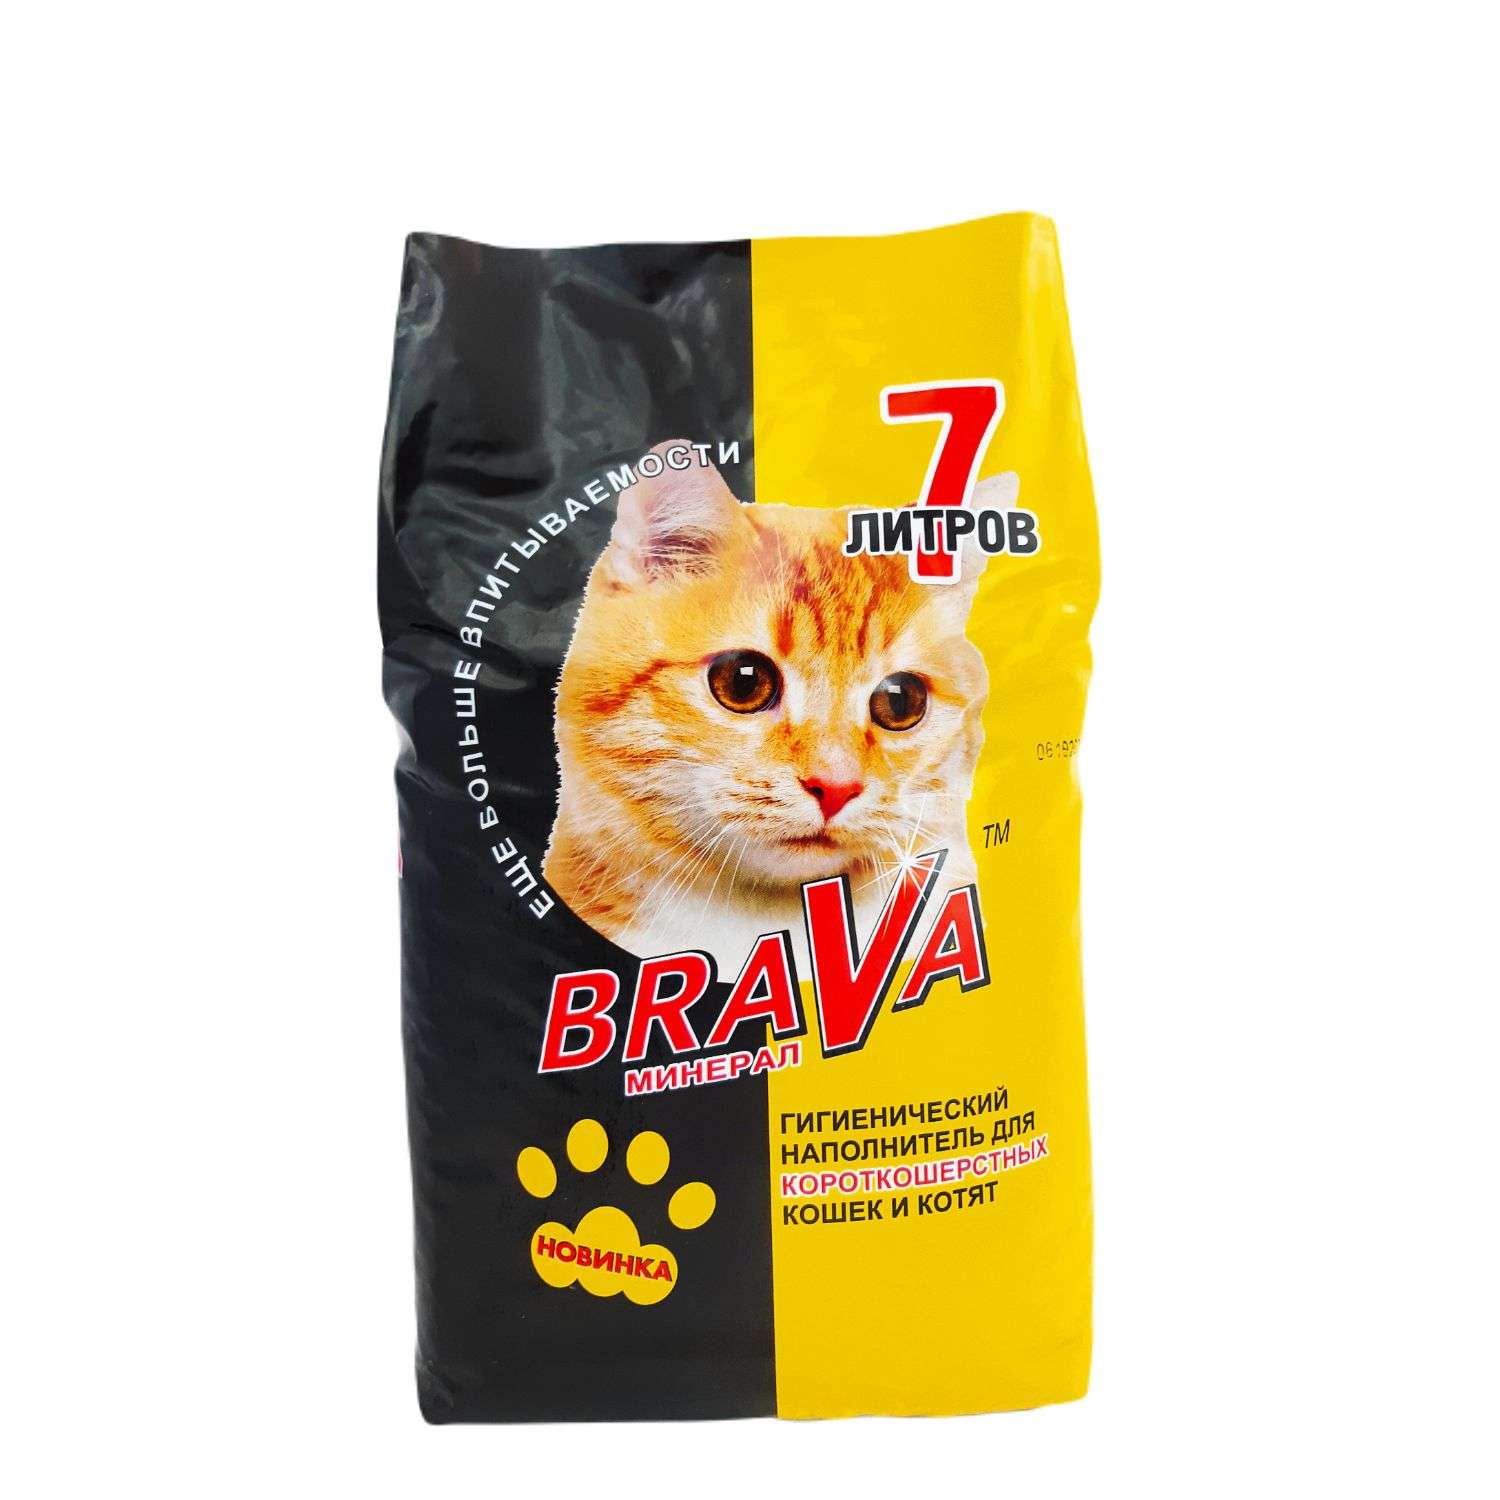 Наполнитель для кошек BraVa минеральный бентонитовый для гладкошерстных кошек 7л - фото 1